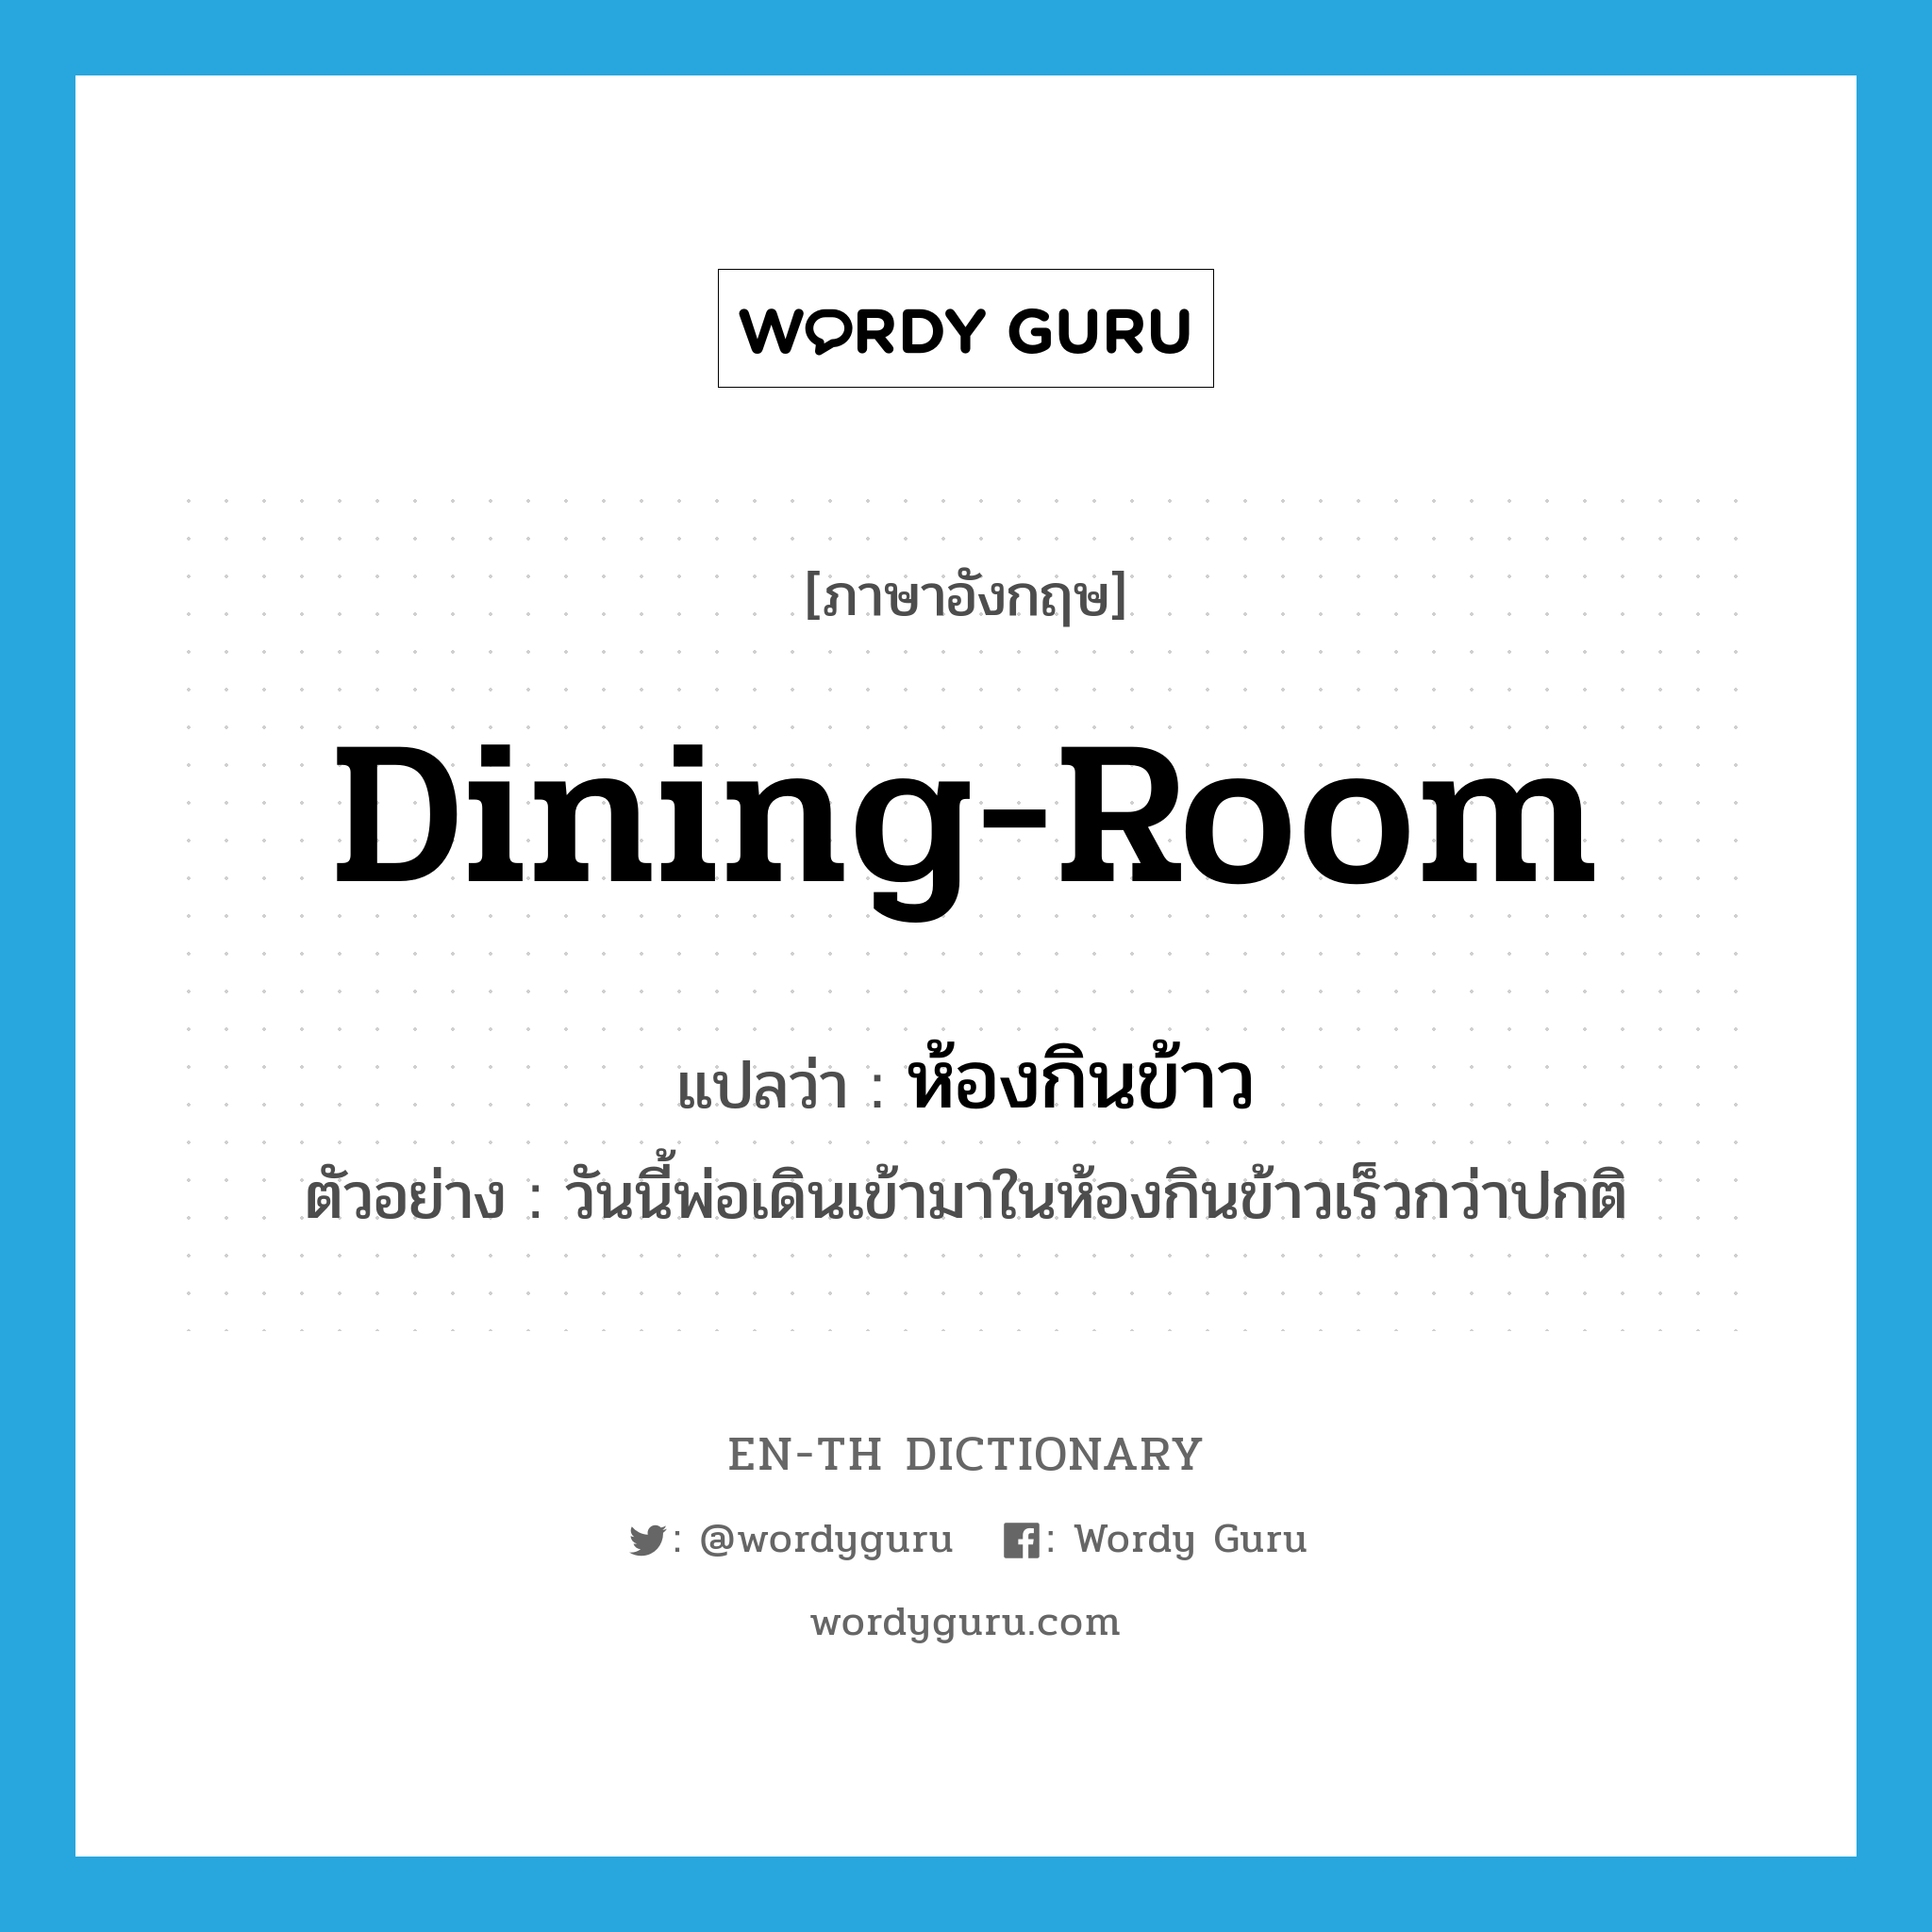 dining-room แปลว่า?, คำศัพท์ภาษาอังกฤษ dining-room แปลว่า ห้องกินข้าว ประเภท N ตัวอย่าง วันนี้พ่อเดินเข้ามาในห้องกินข้าวเร็วกว่าปกติ หมวด N